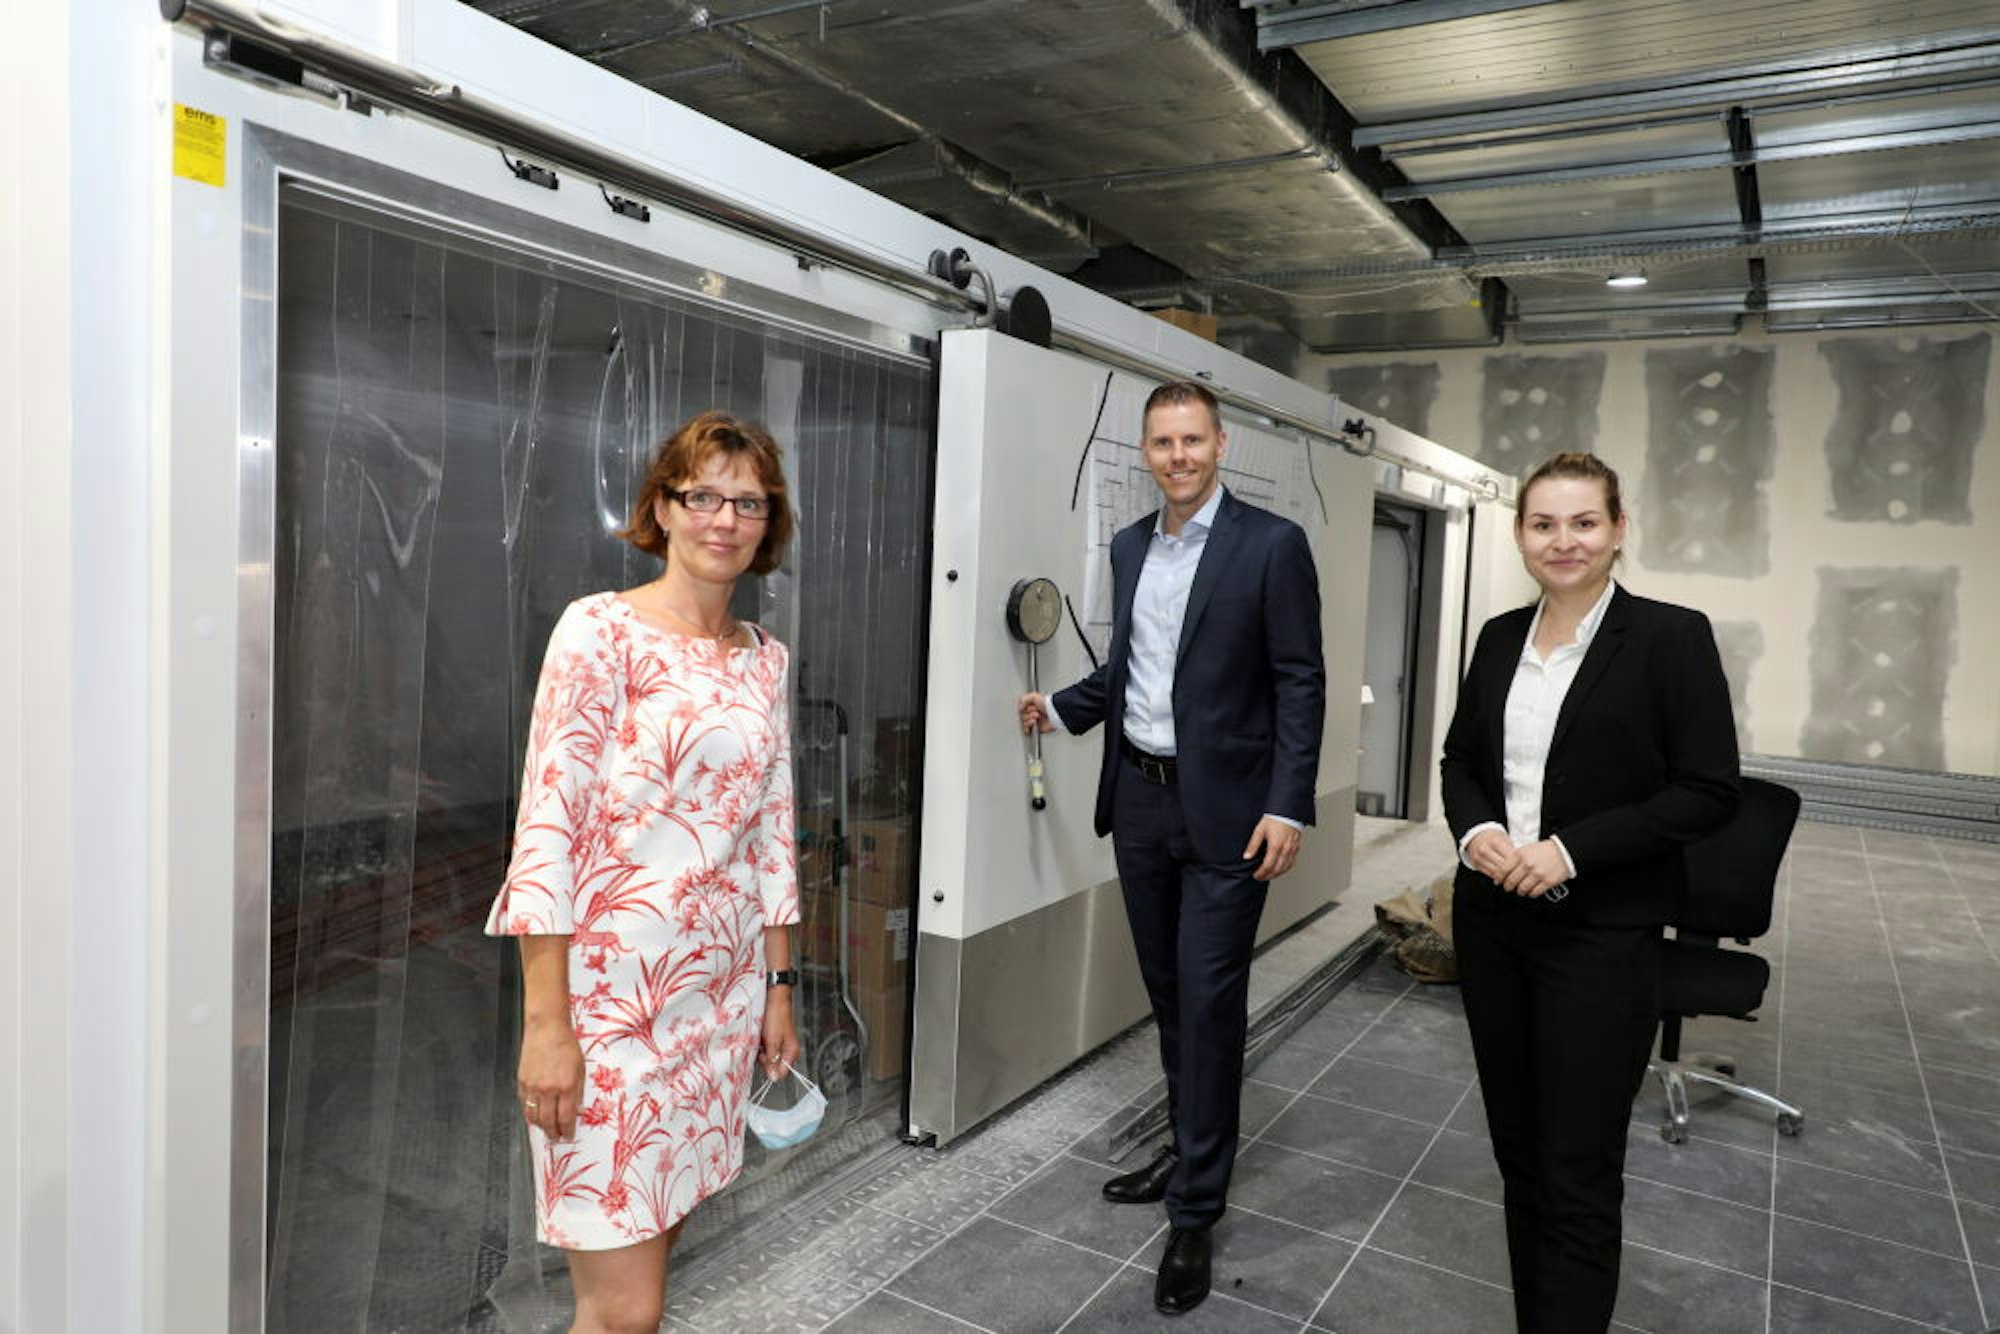 Die Kühlräume sind bereits eingebaut: Centermanagerin Bettina Wisniewski mit Ole-Christian Lewerenz und Lisa Schütte von Aldi Süd.